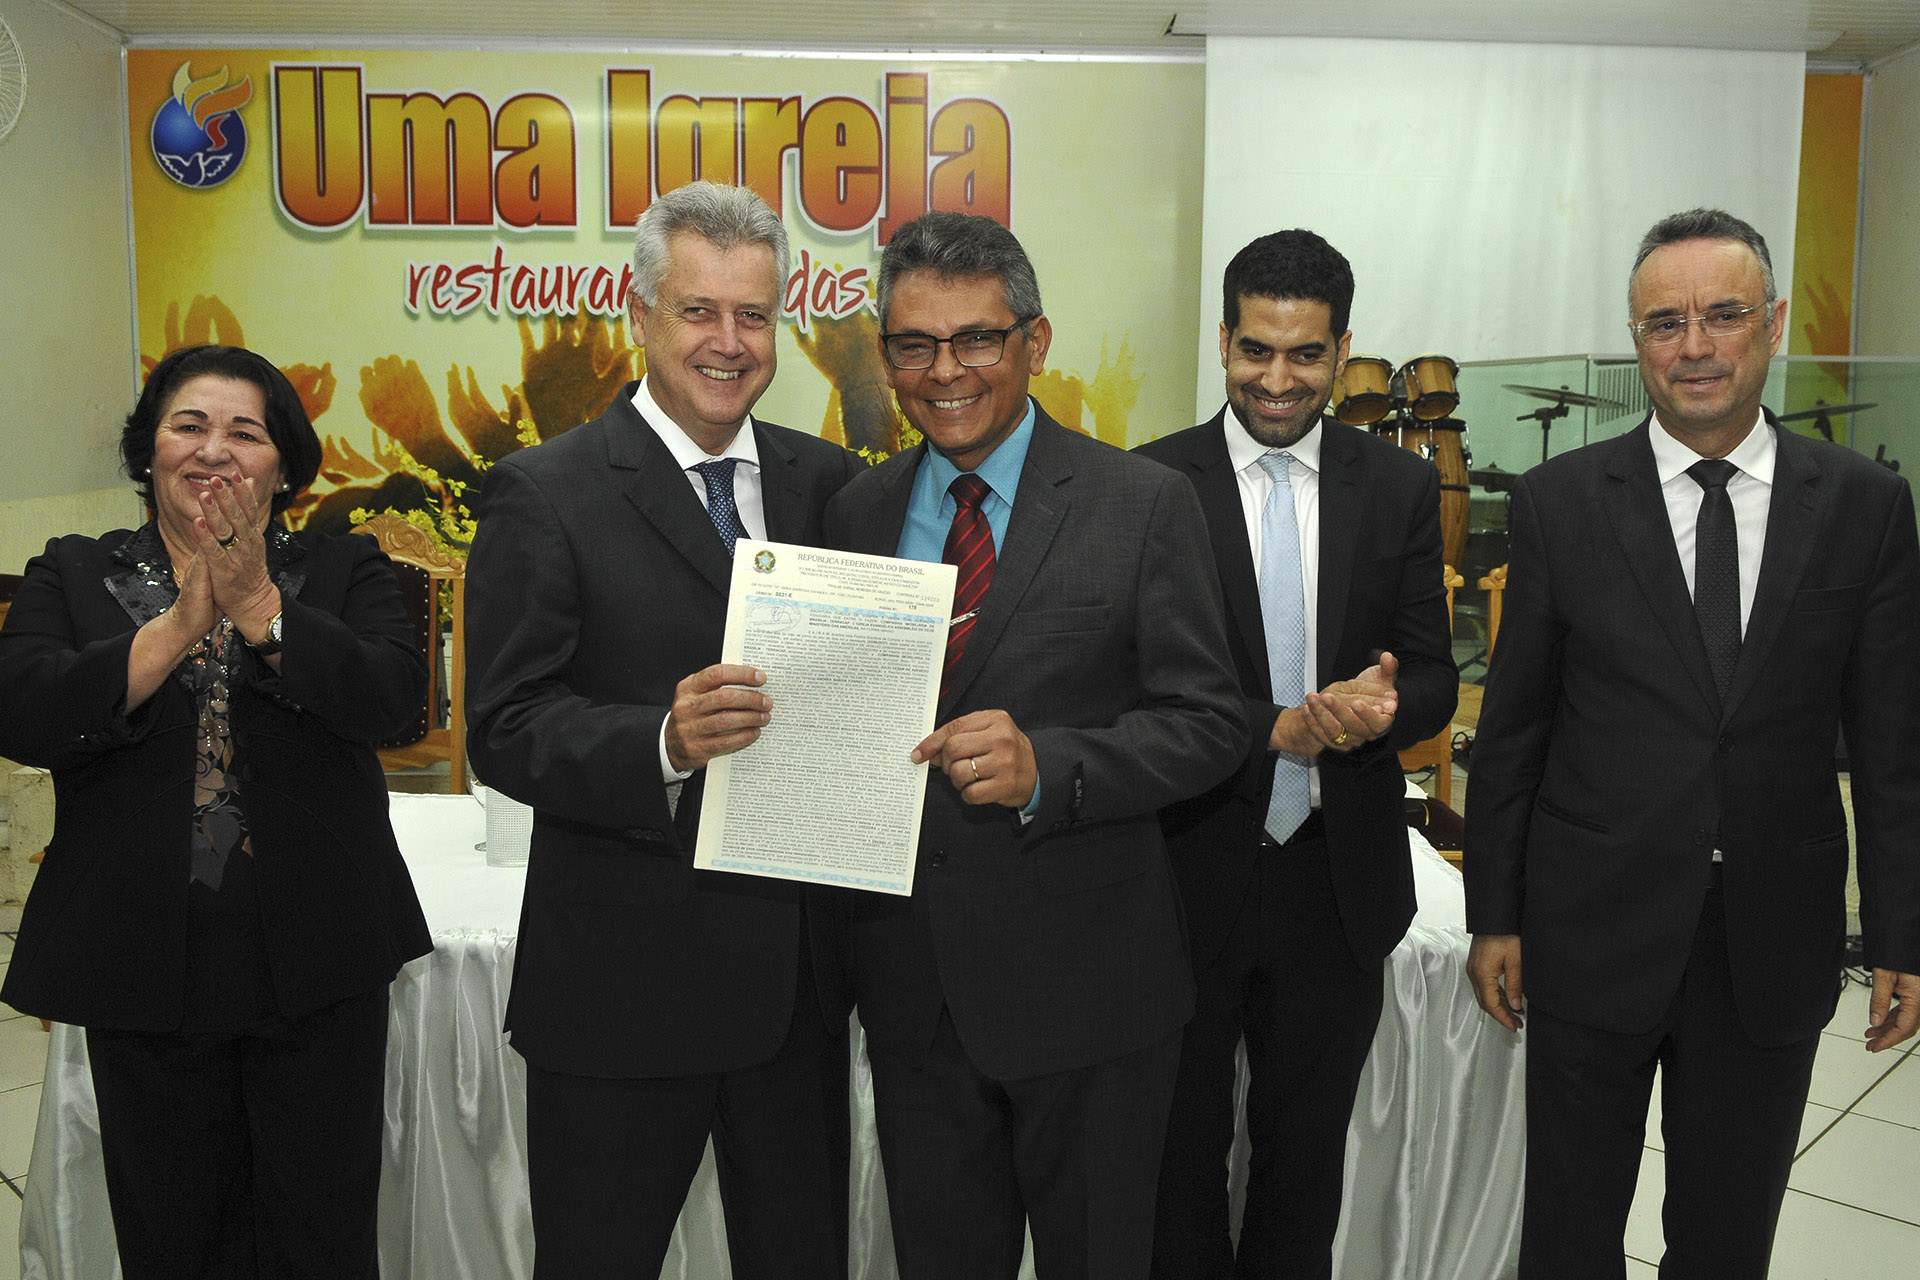 O pastor José Pereira dos Santos, da Igreja Evangélica Assembleia de Deus Ministério das Américas, recebeu a escritura das mãos do governador Rollemberg.